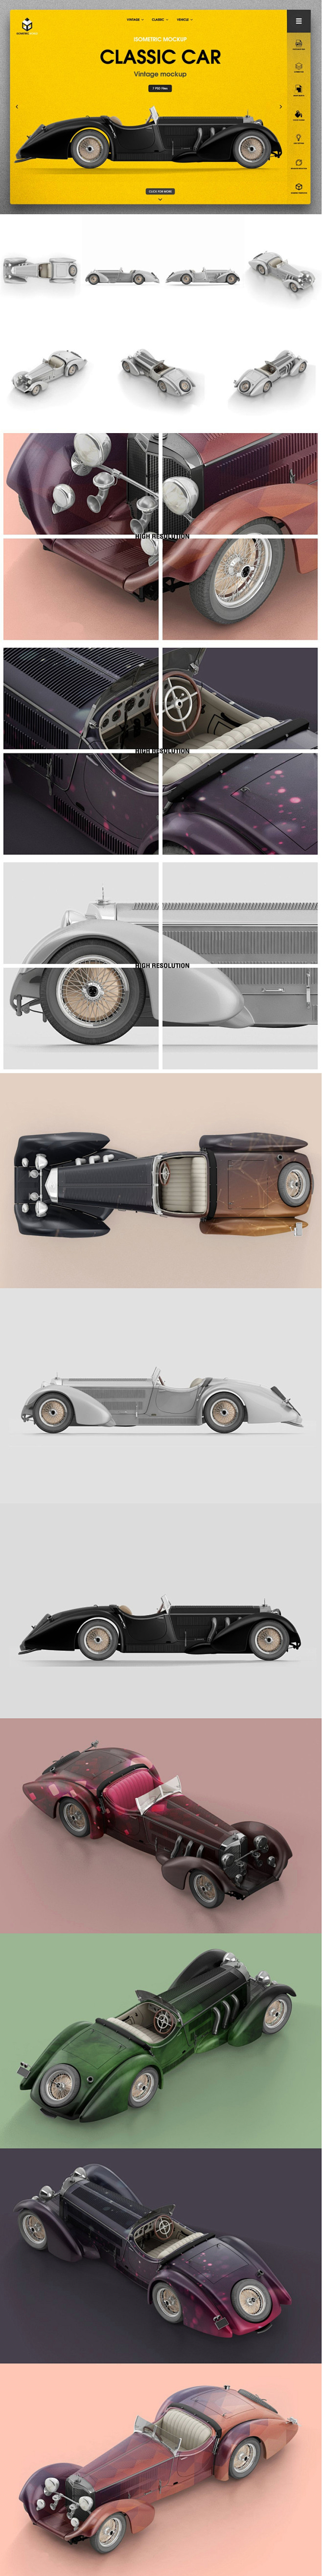 多角度3D效果的经典的老爷车车贴设计展示...